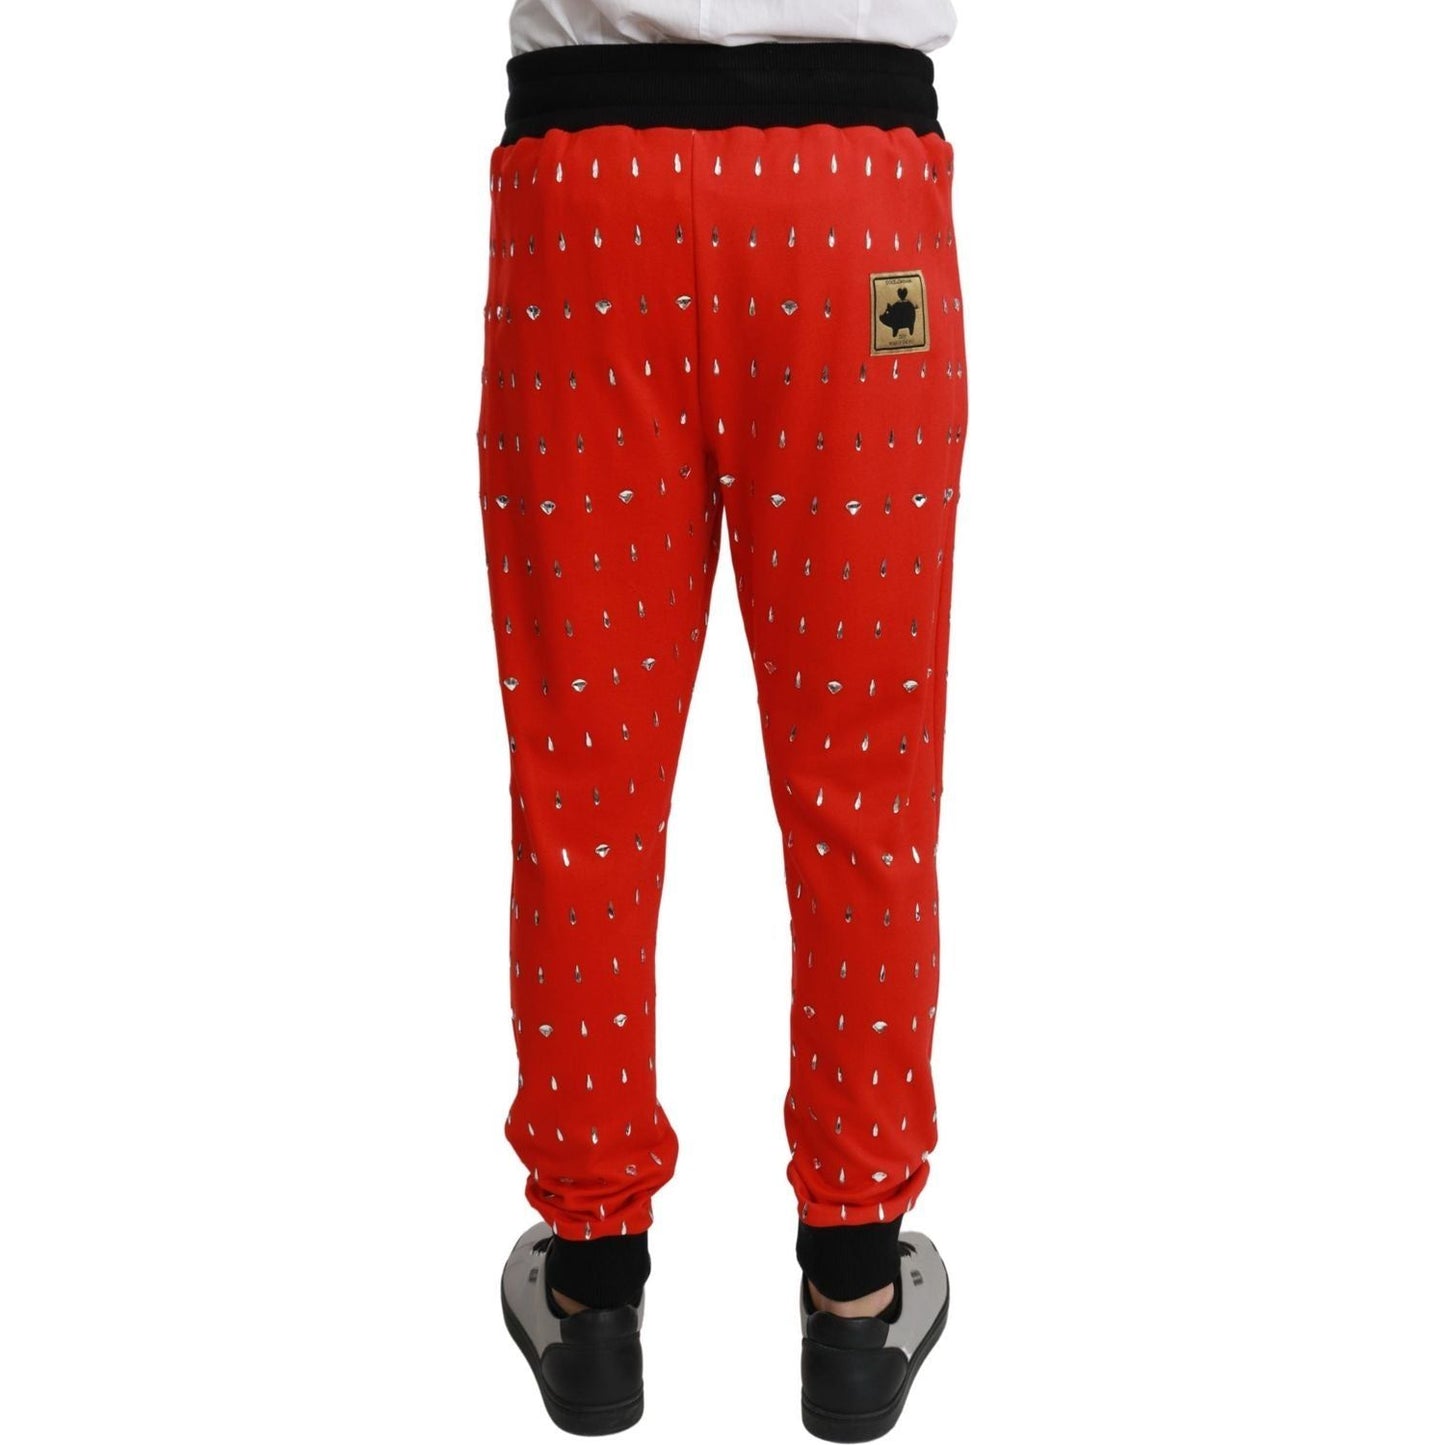 Dolce & GabbanaChic Red Piggy Bank Print SweatpantsMcRichard Designer Brands£2269.00